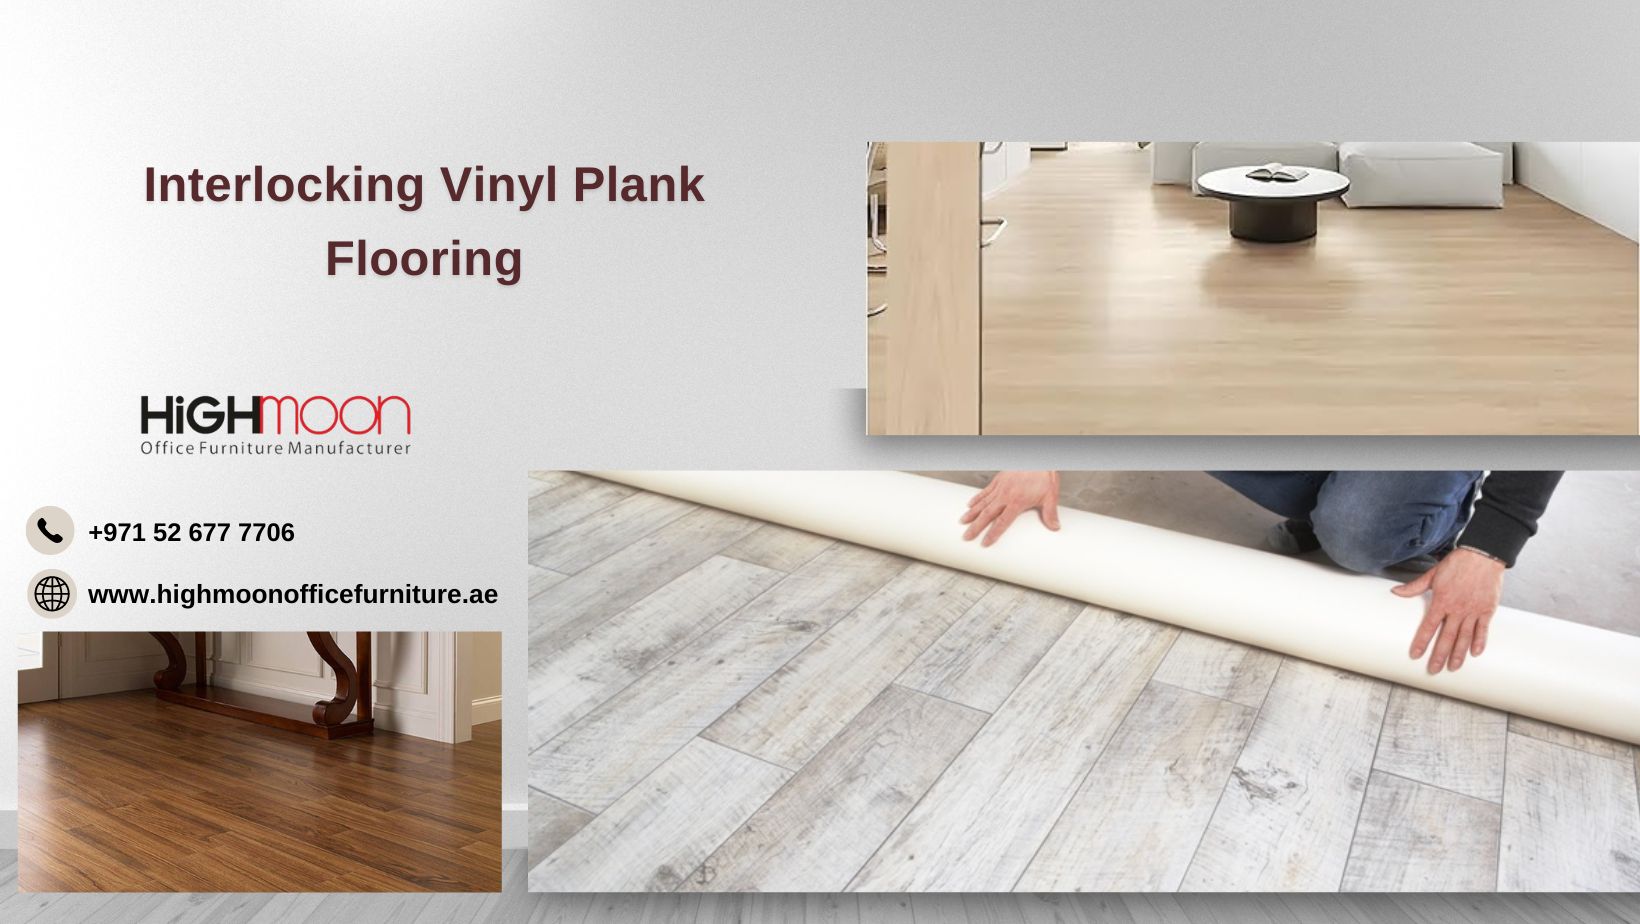 Interlocking Vinyl Plank Flooring